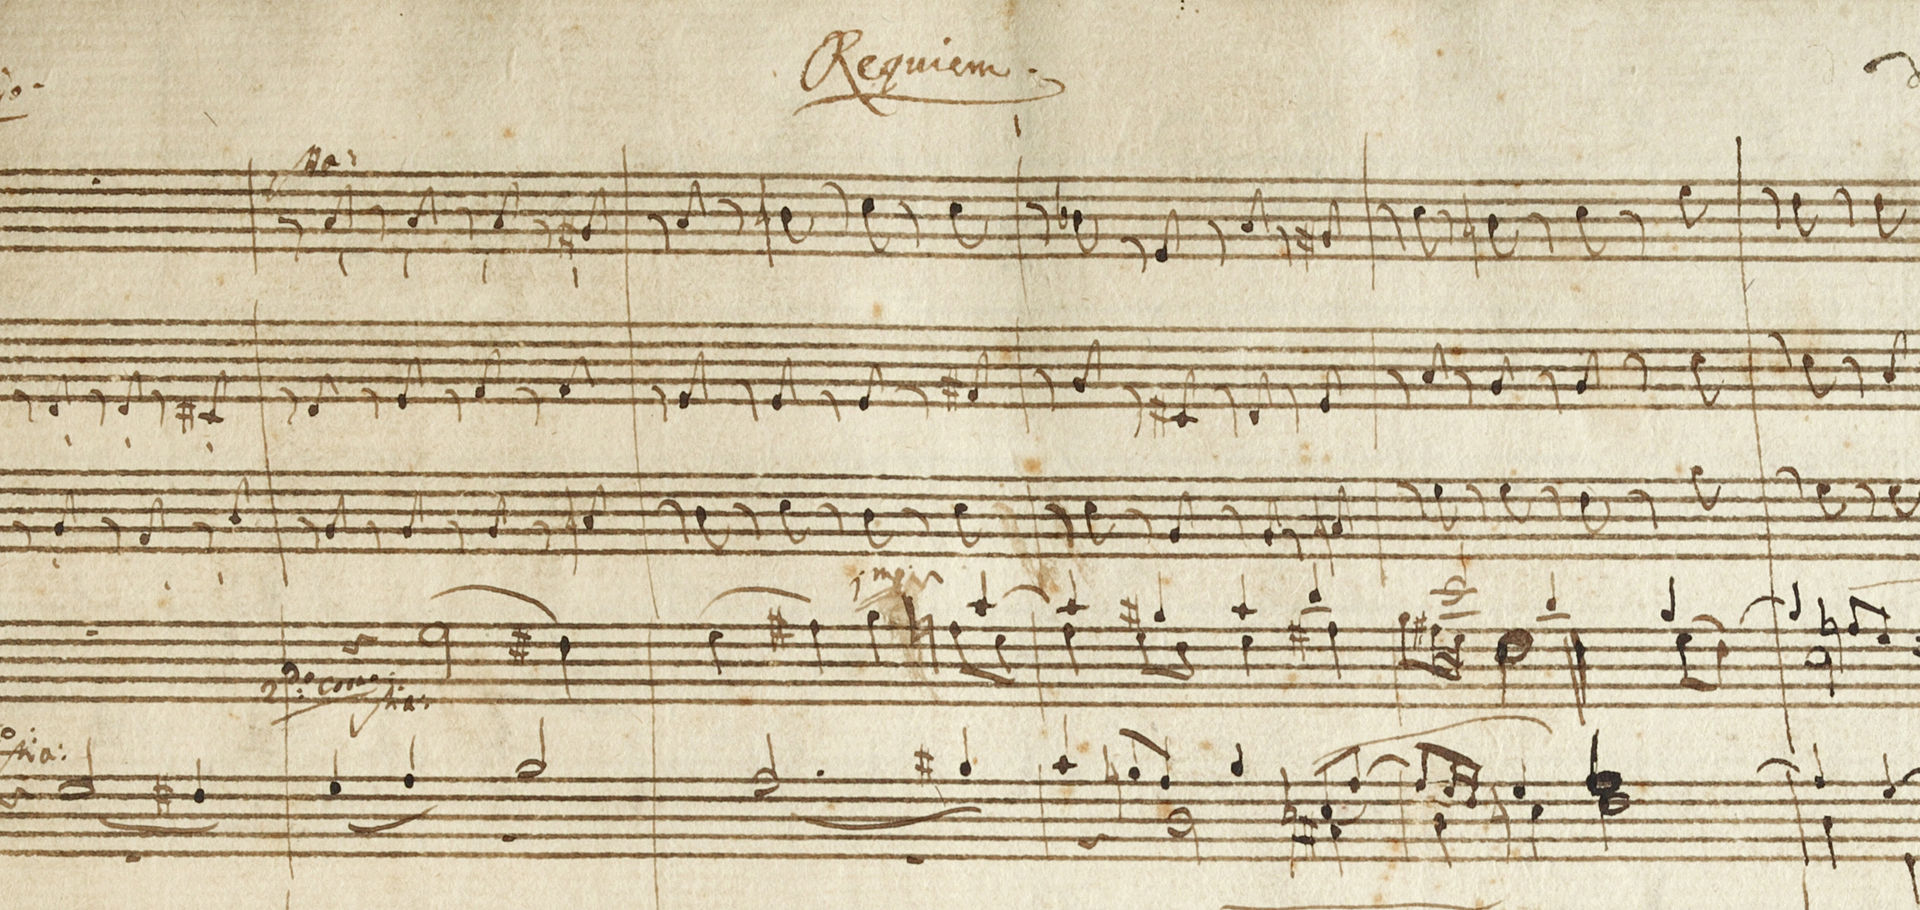 Mozart’s “Requiem”